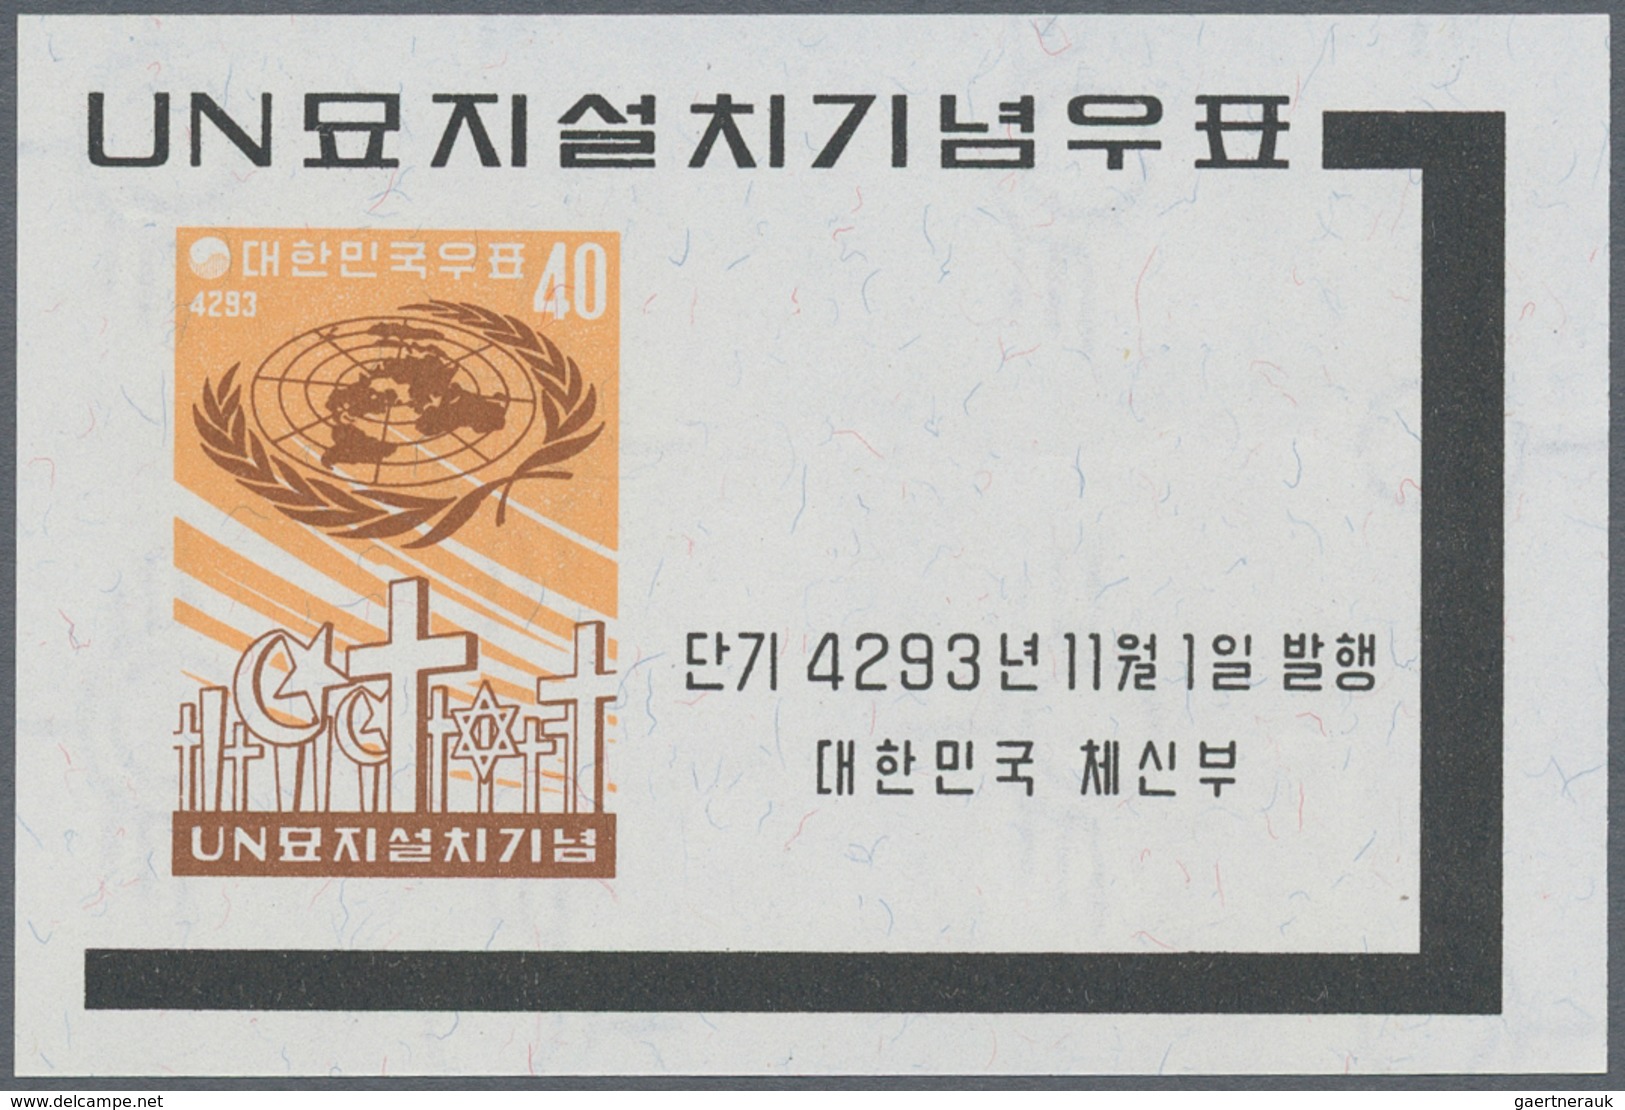 Korea-Süd: 1960, U.N. Cemetery Souvenir Sheet, Lot Of 500 Pieces Mint Never Hinged. Michel Block 154 - Corea Del Sur